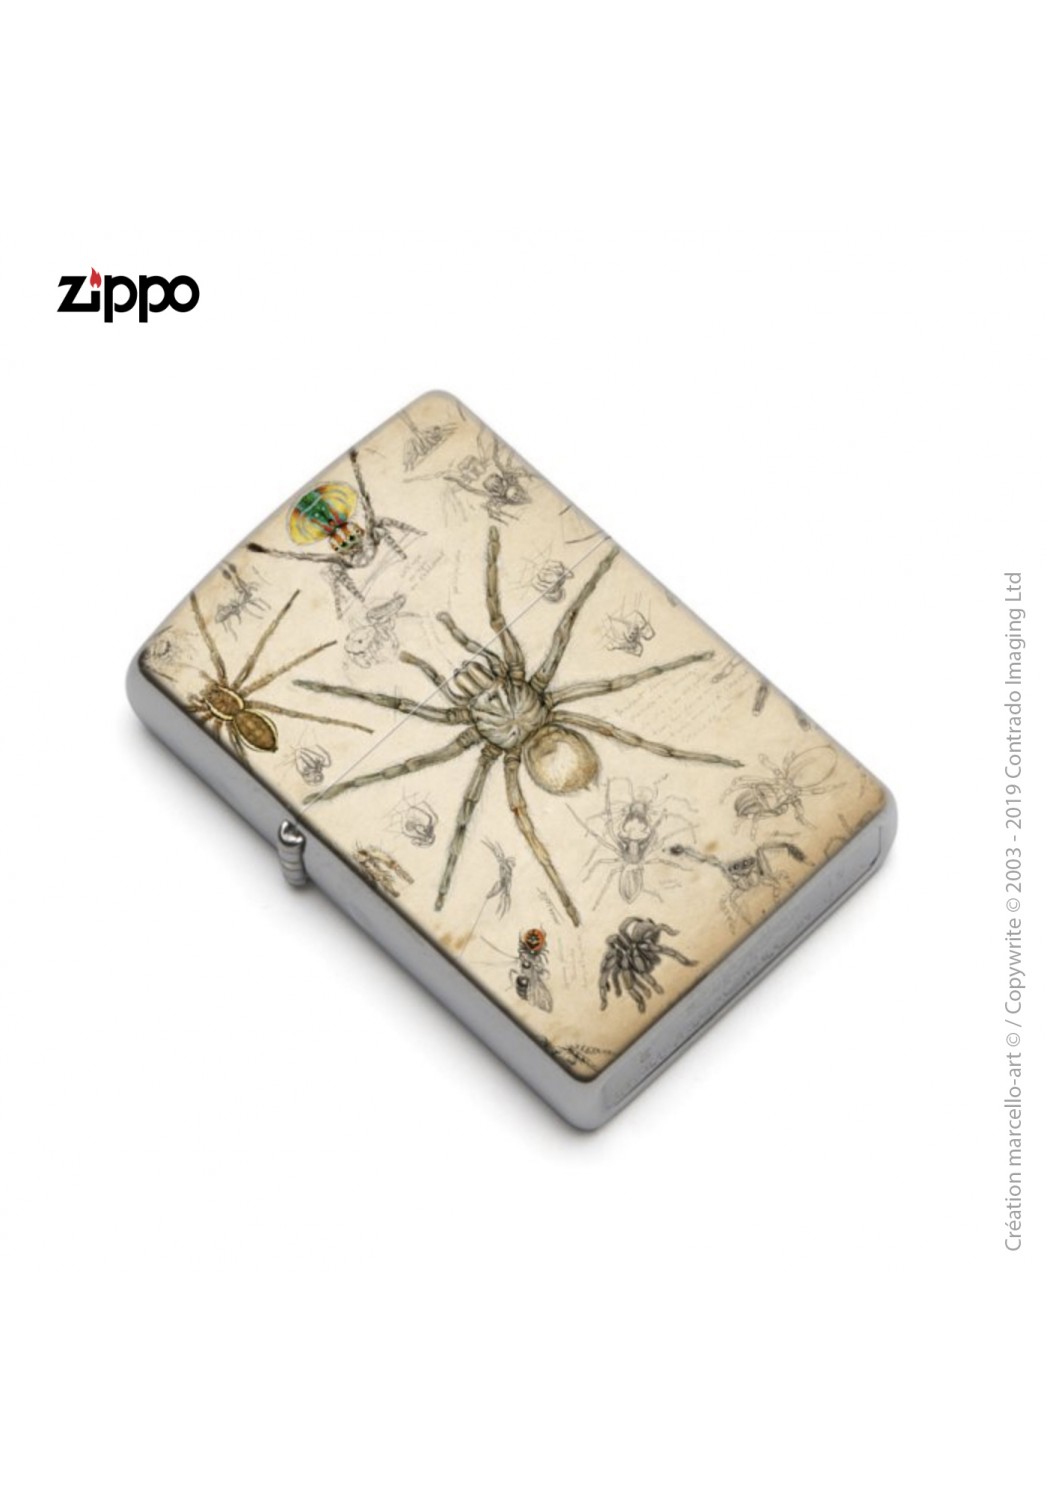 Marcello-art: Decoration accessoiries Zippo 82 Arachna